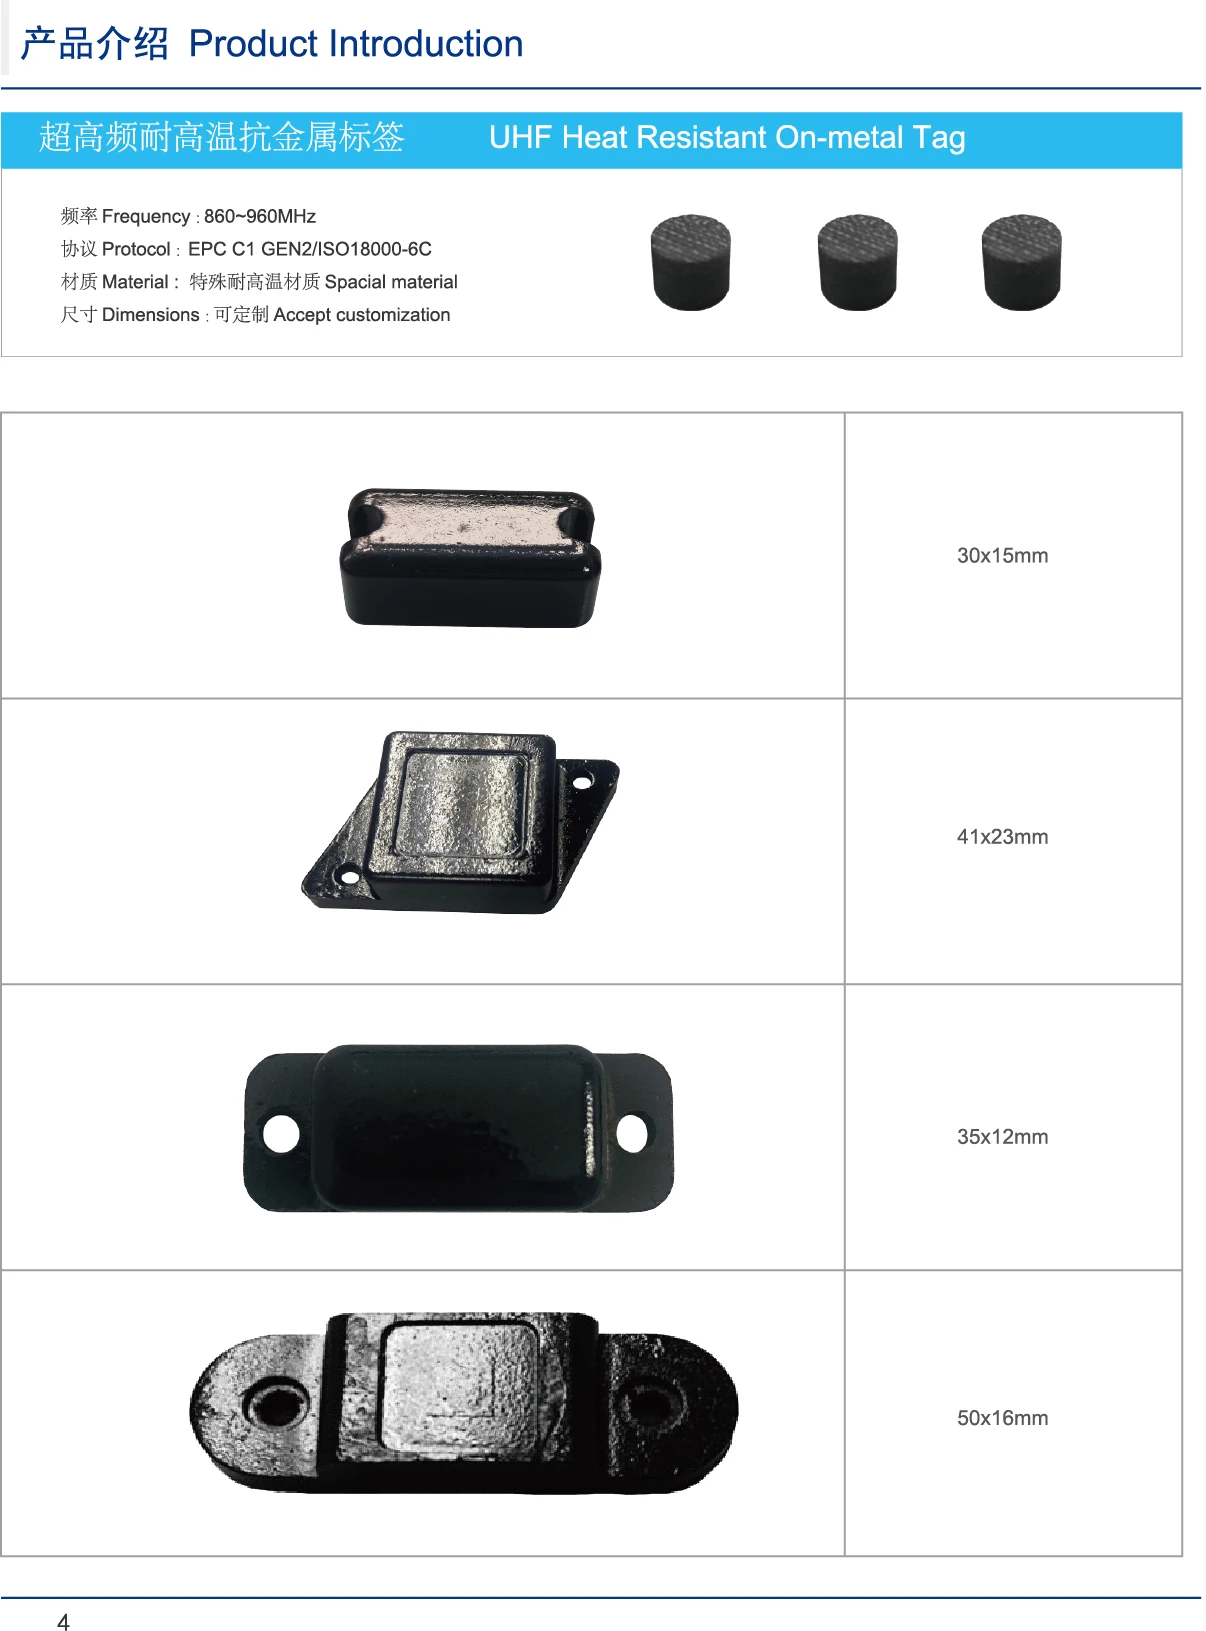 RFID TAG product catalog-2.jpg